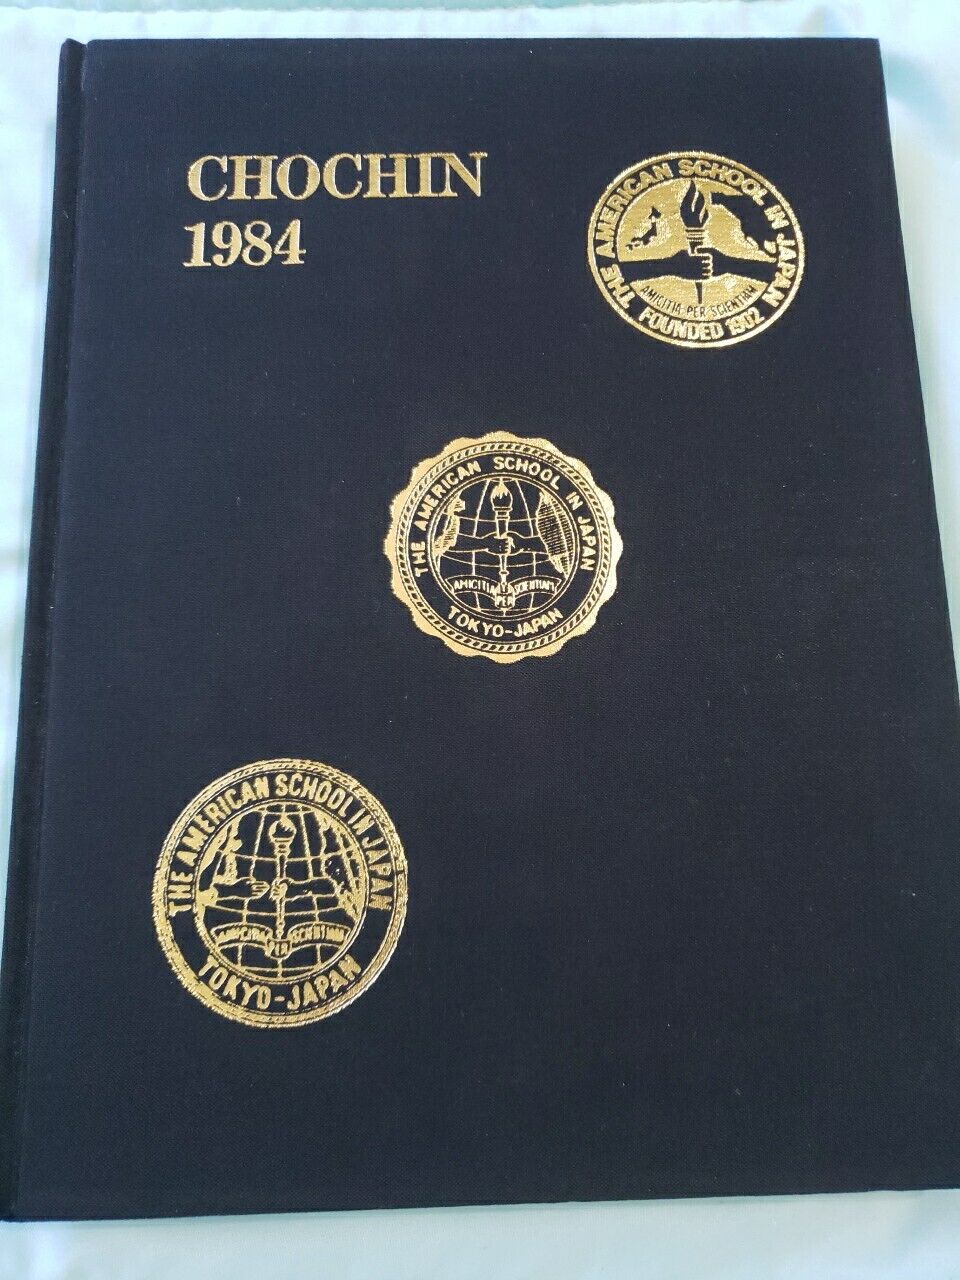 CHOCHIN 1984* THE AMERICAN SCHOOL IN JAPAN* TOKYO, JAPAN* YEARBOOK